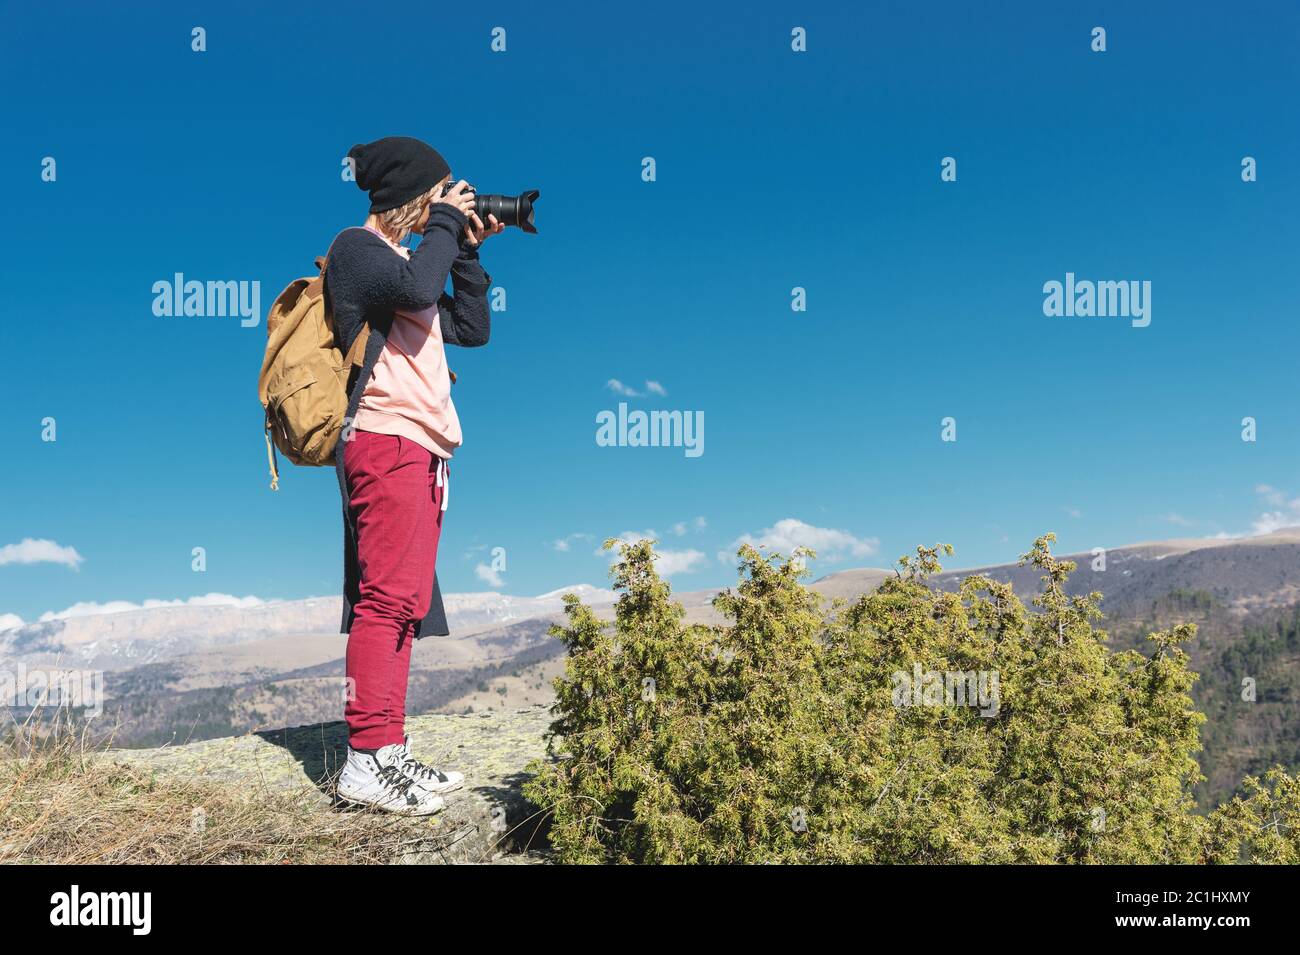 Nature photographe prendre des photos sur son appareil photo reflex numérique en plein air lors d'une randonnée dans le Caucase. Caucase du Nord Russie Banque D'Images